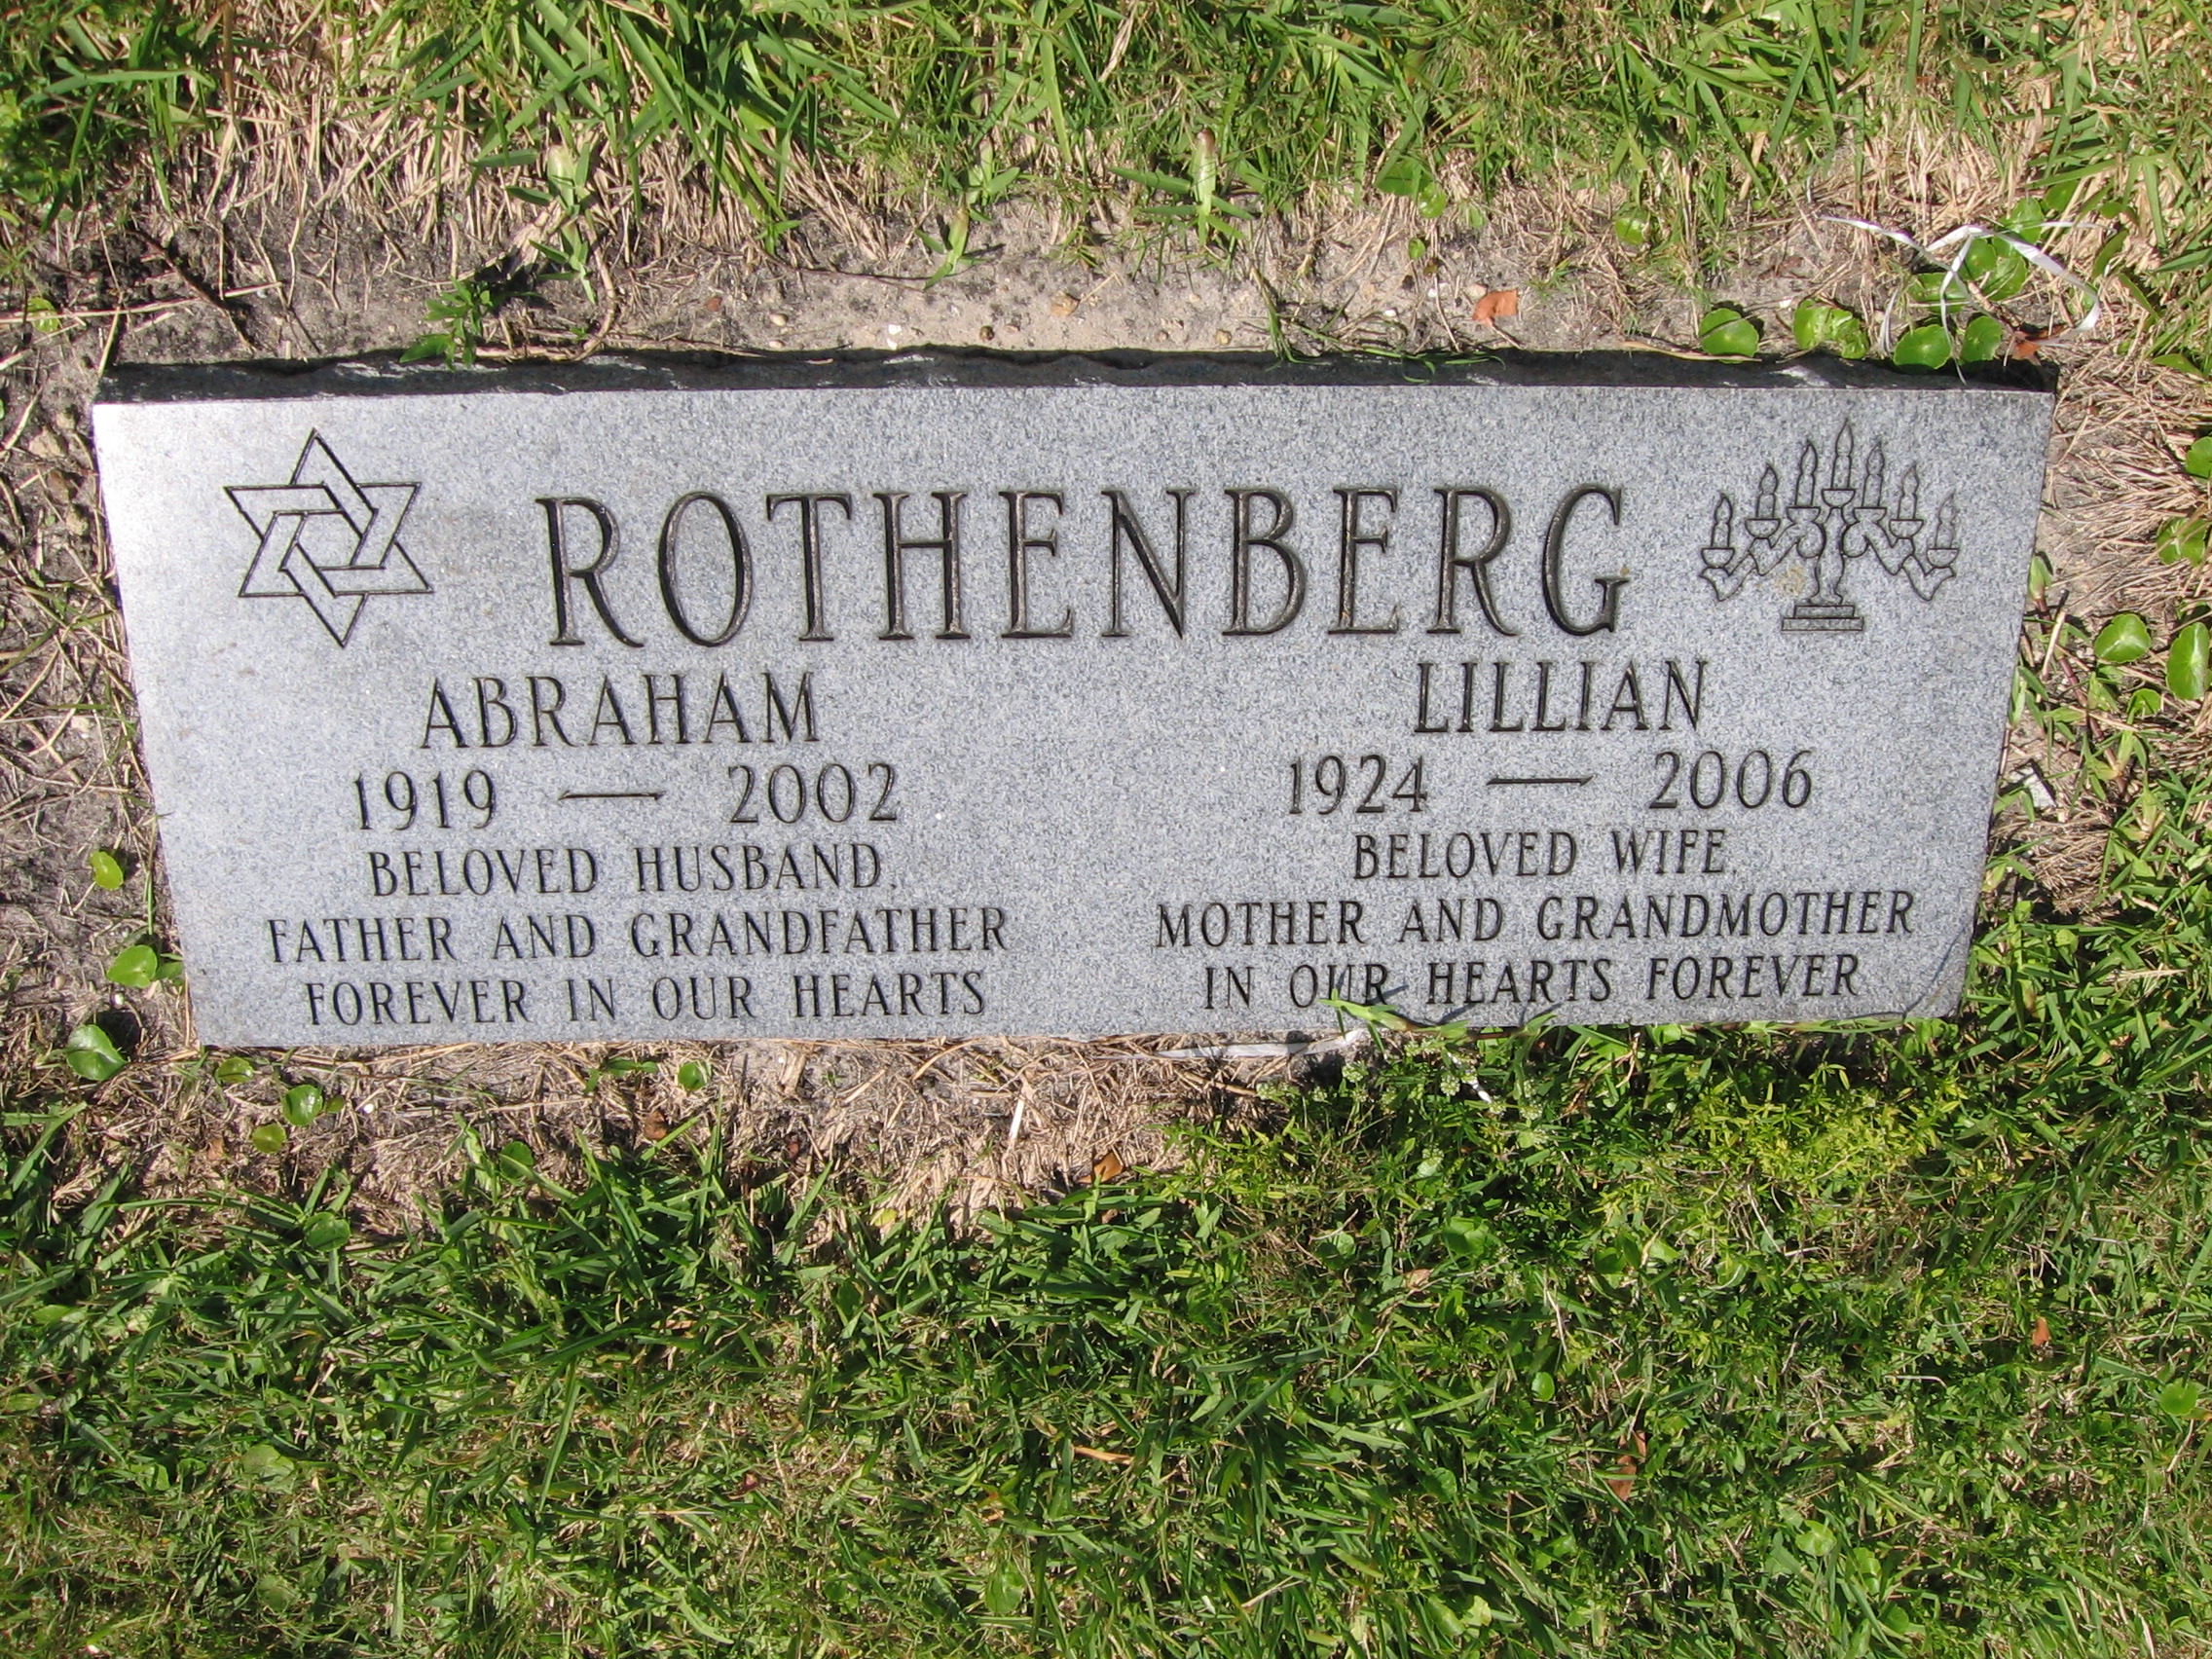 Abraham Rothenberg